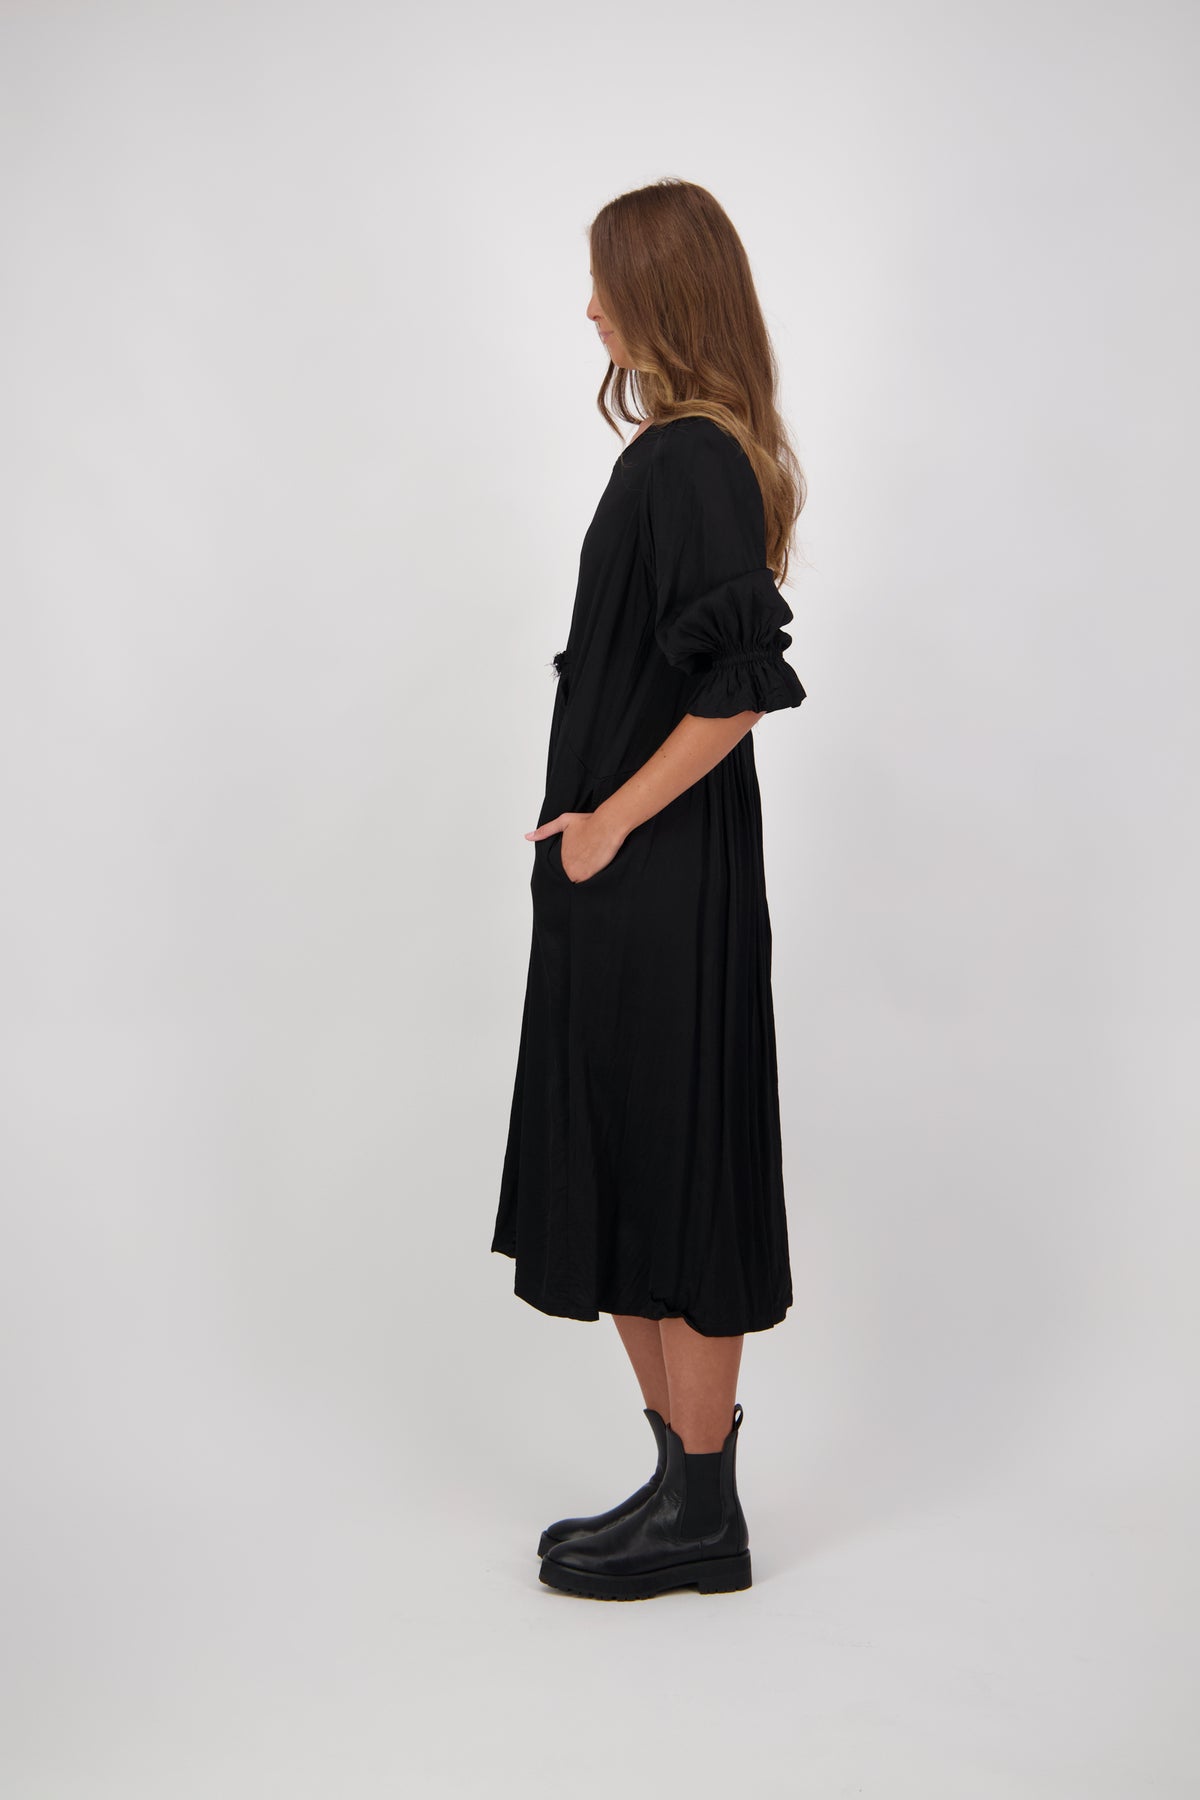 Capri Dress Black